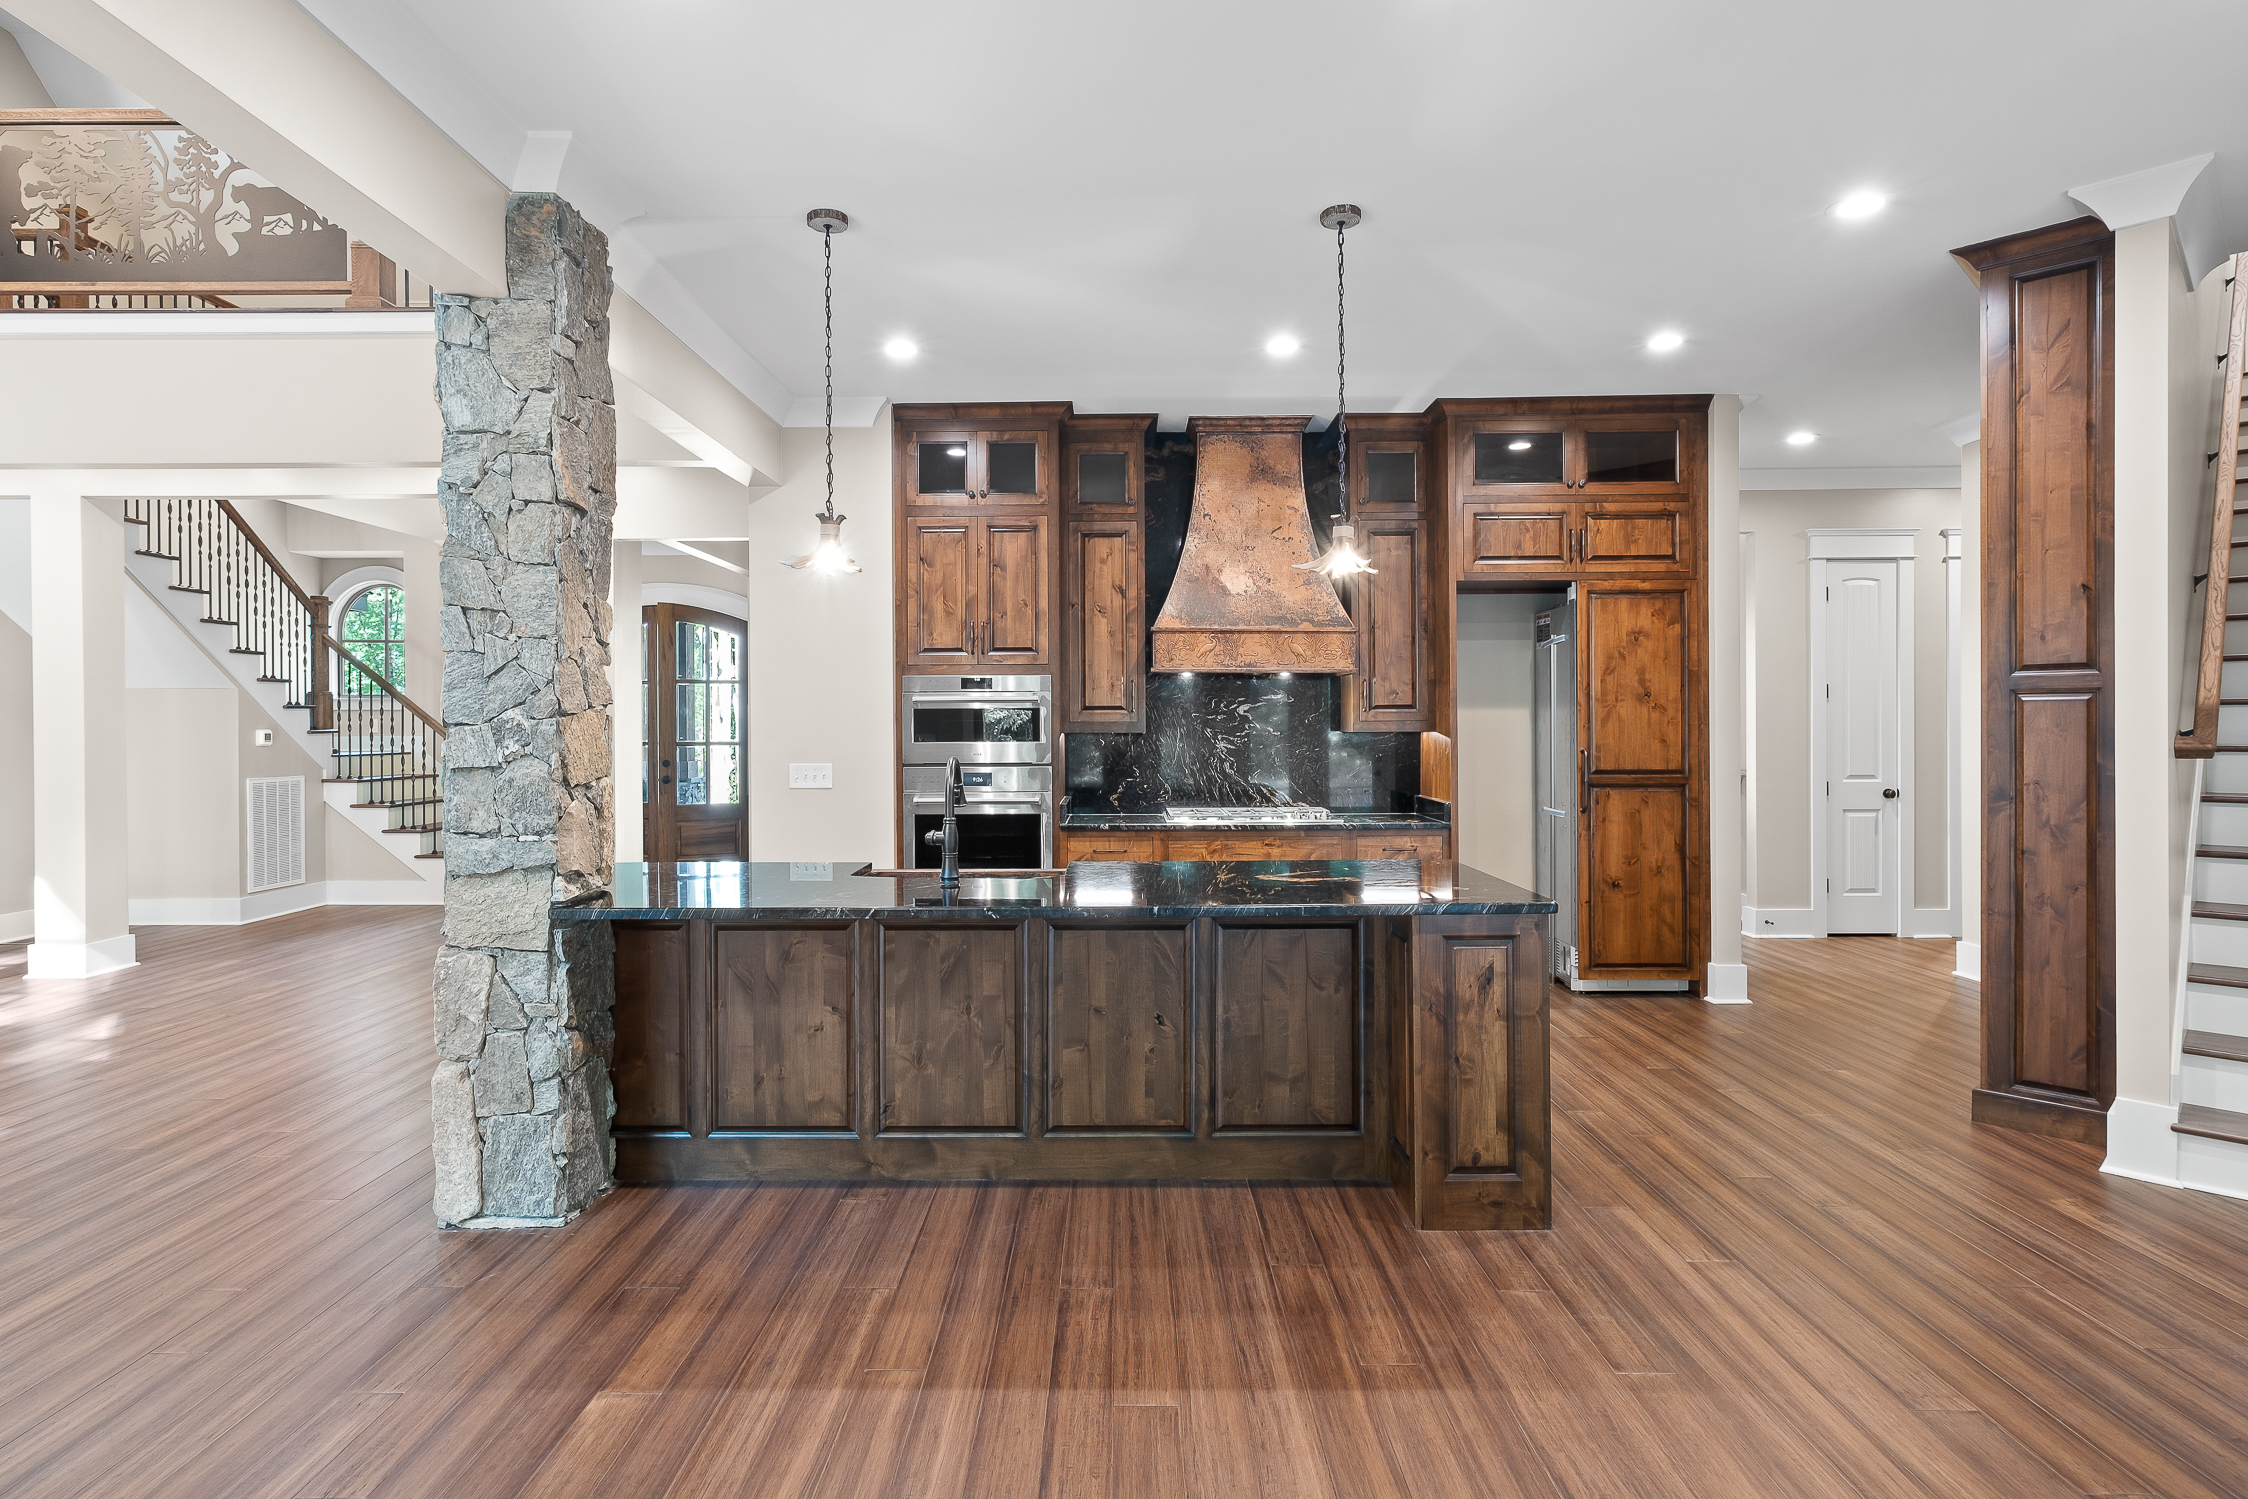 Copper sleek black range hood, complemented by elegant wood kitchen cabinets and stunning marble backsplash